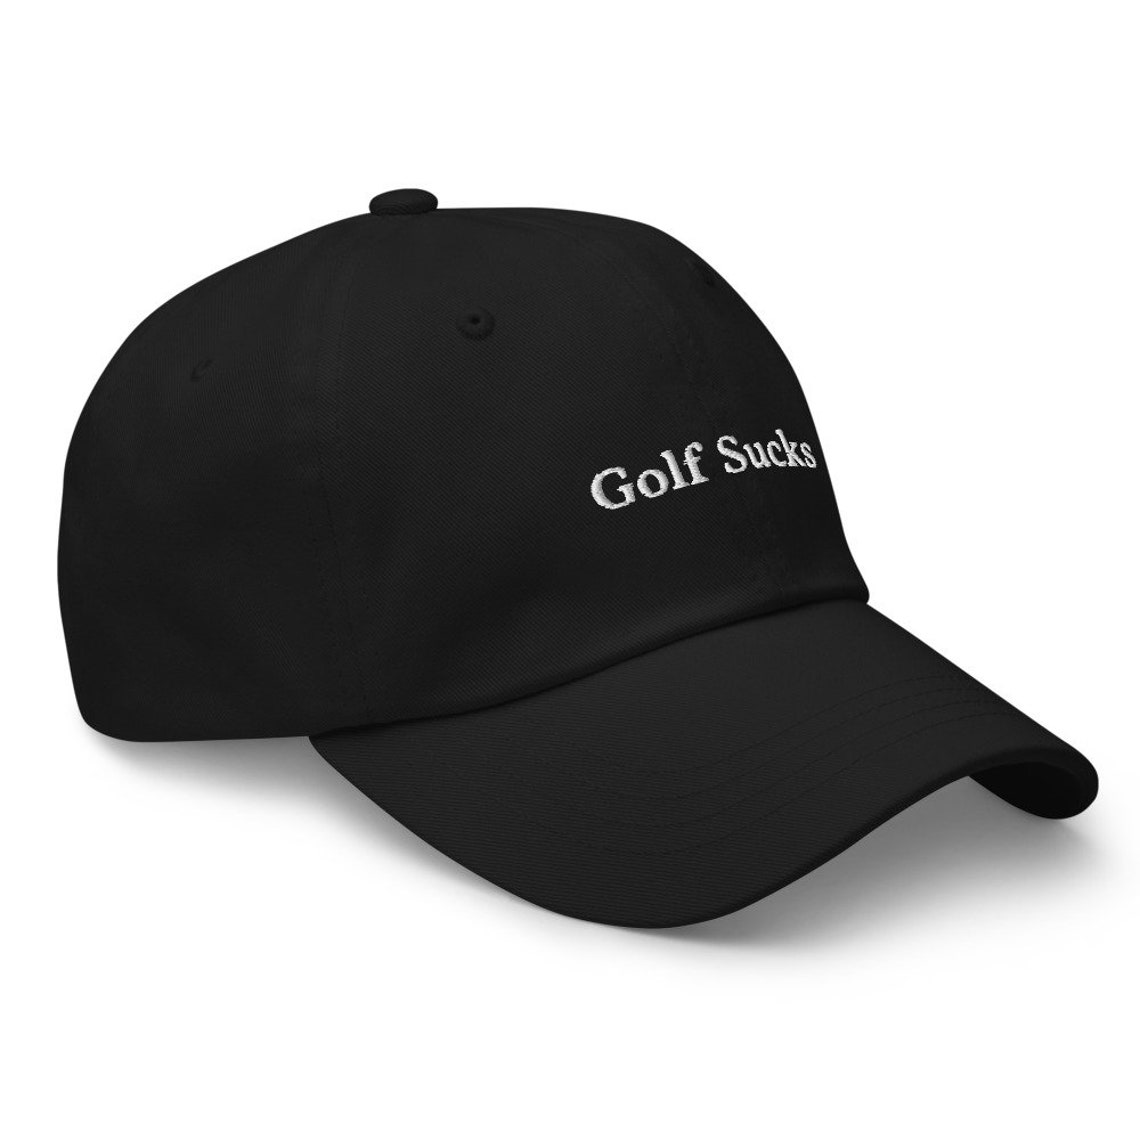 Golf Sucks Hat golf hat golf gift dad hat golf hat for men | Etsy